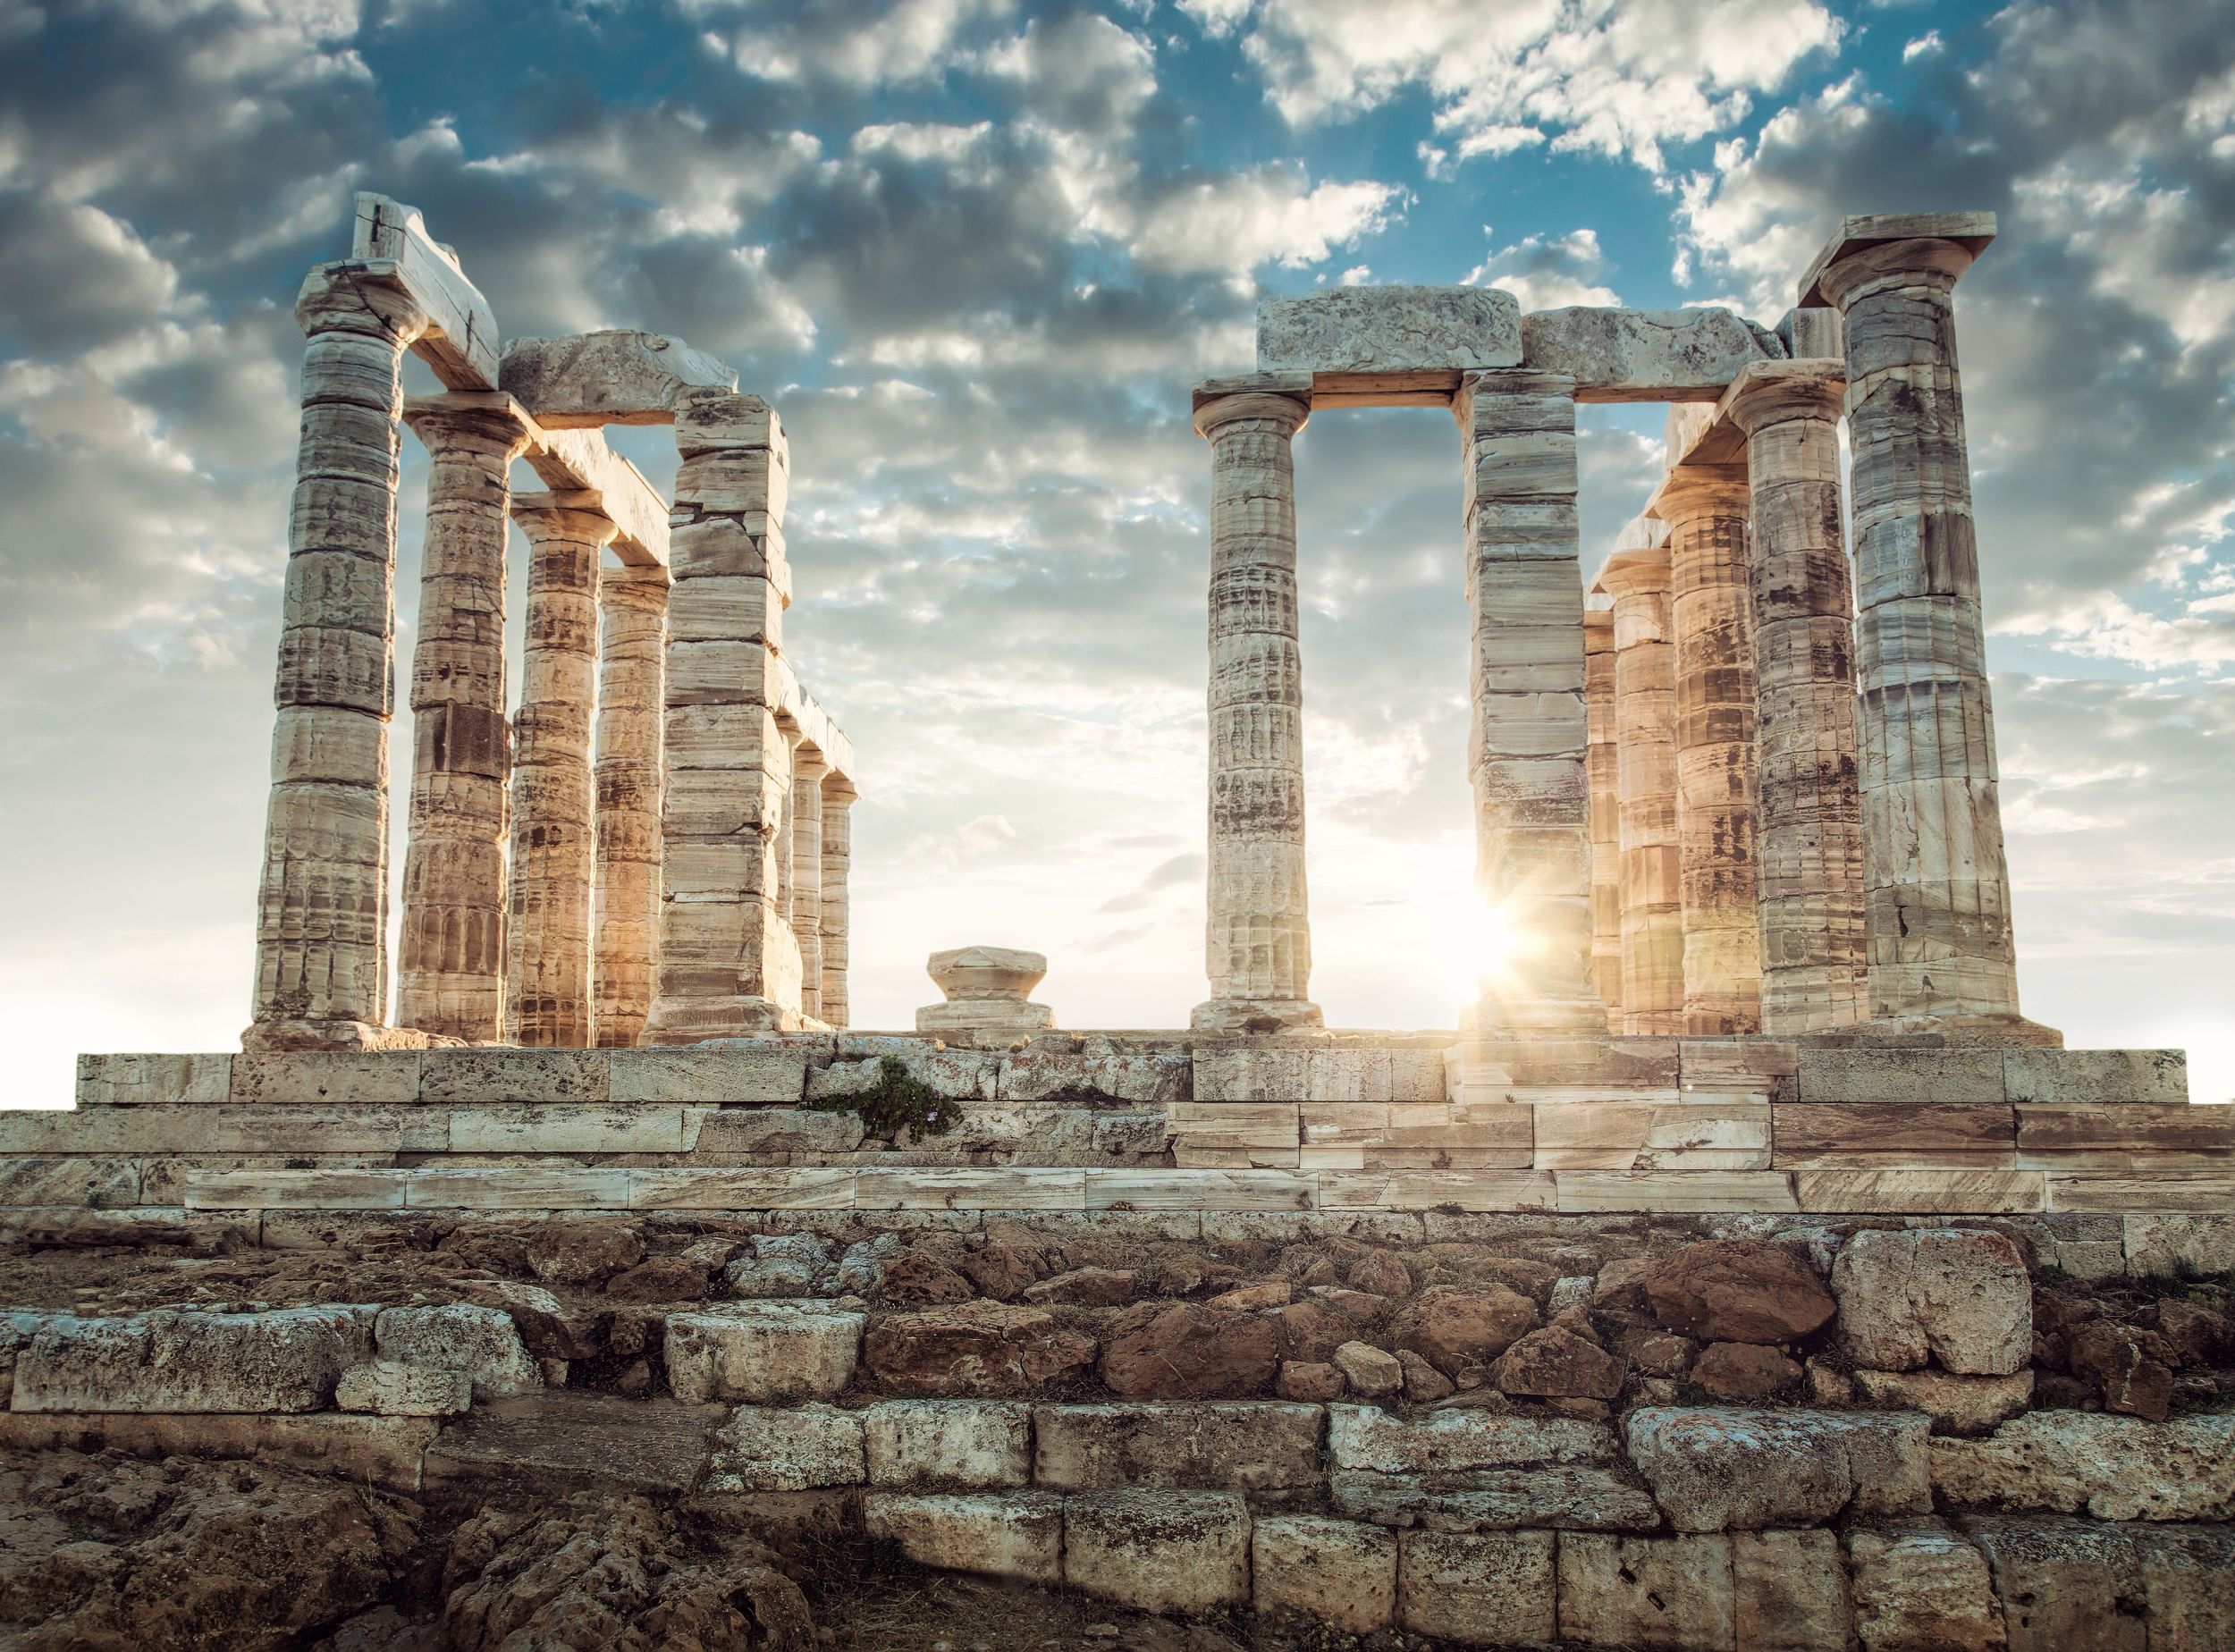 السفر على خطى العالم القديم مع خدمات نقل الشخصيات المهمة: عطلة مبهرة في اليونان